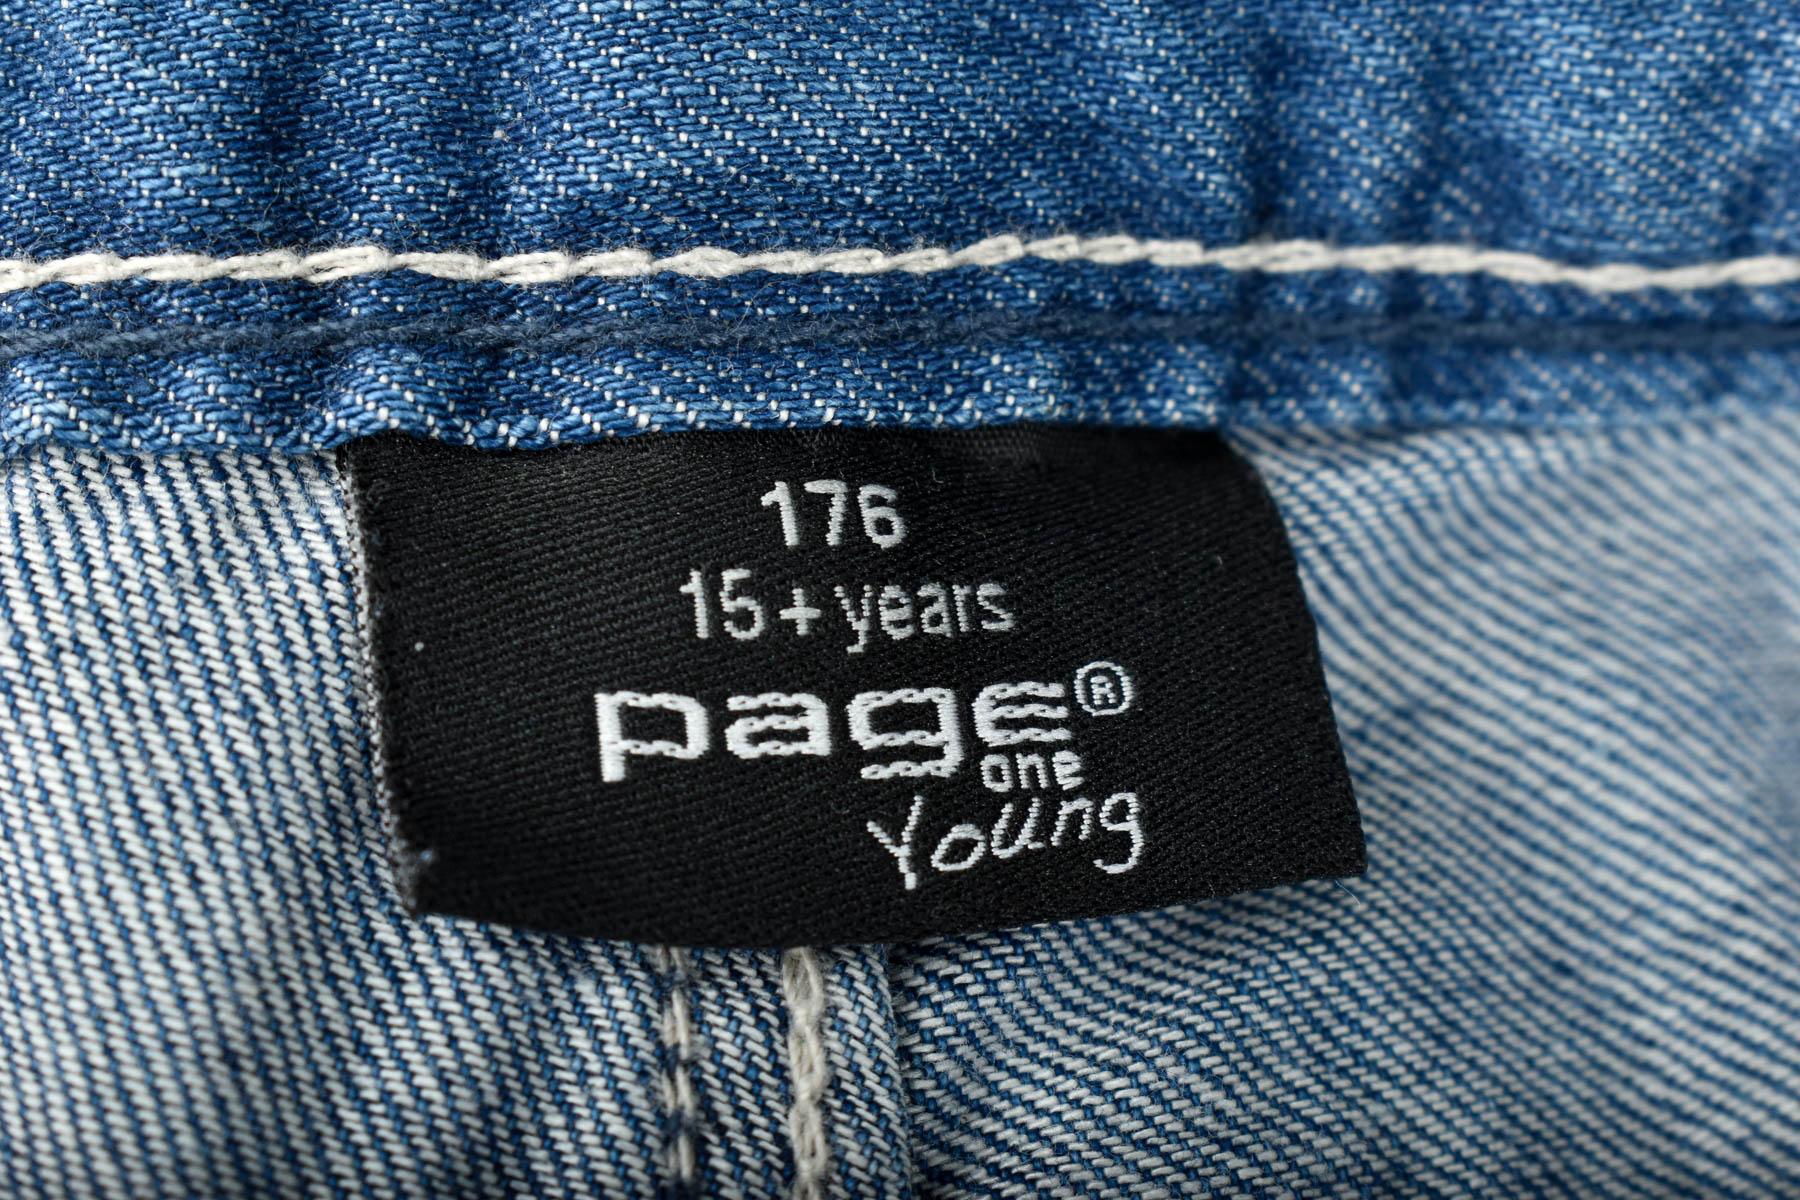 Pantaloni scurți pentru fată - Page One Young - 2